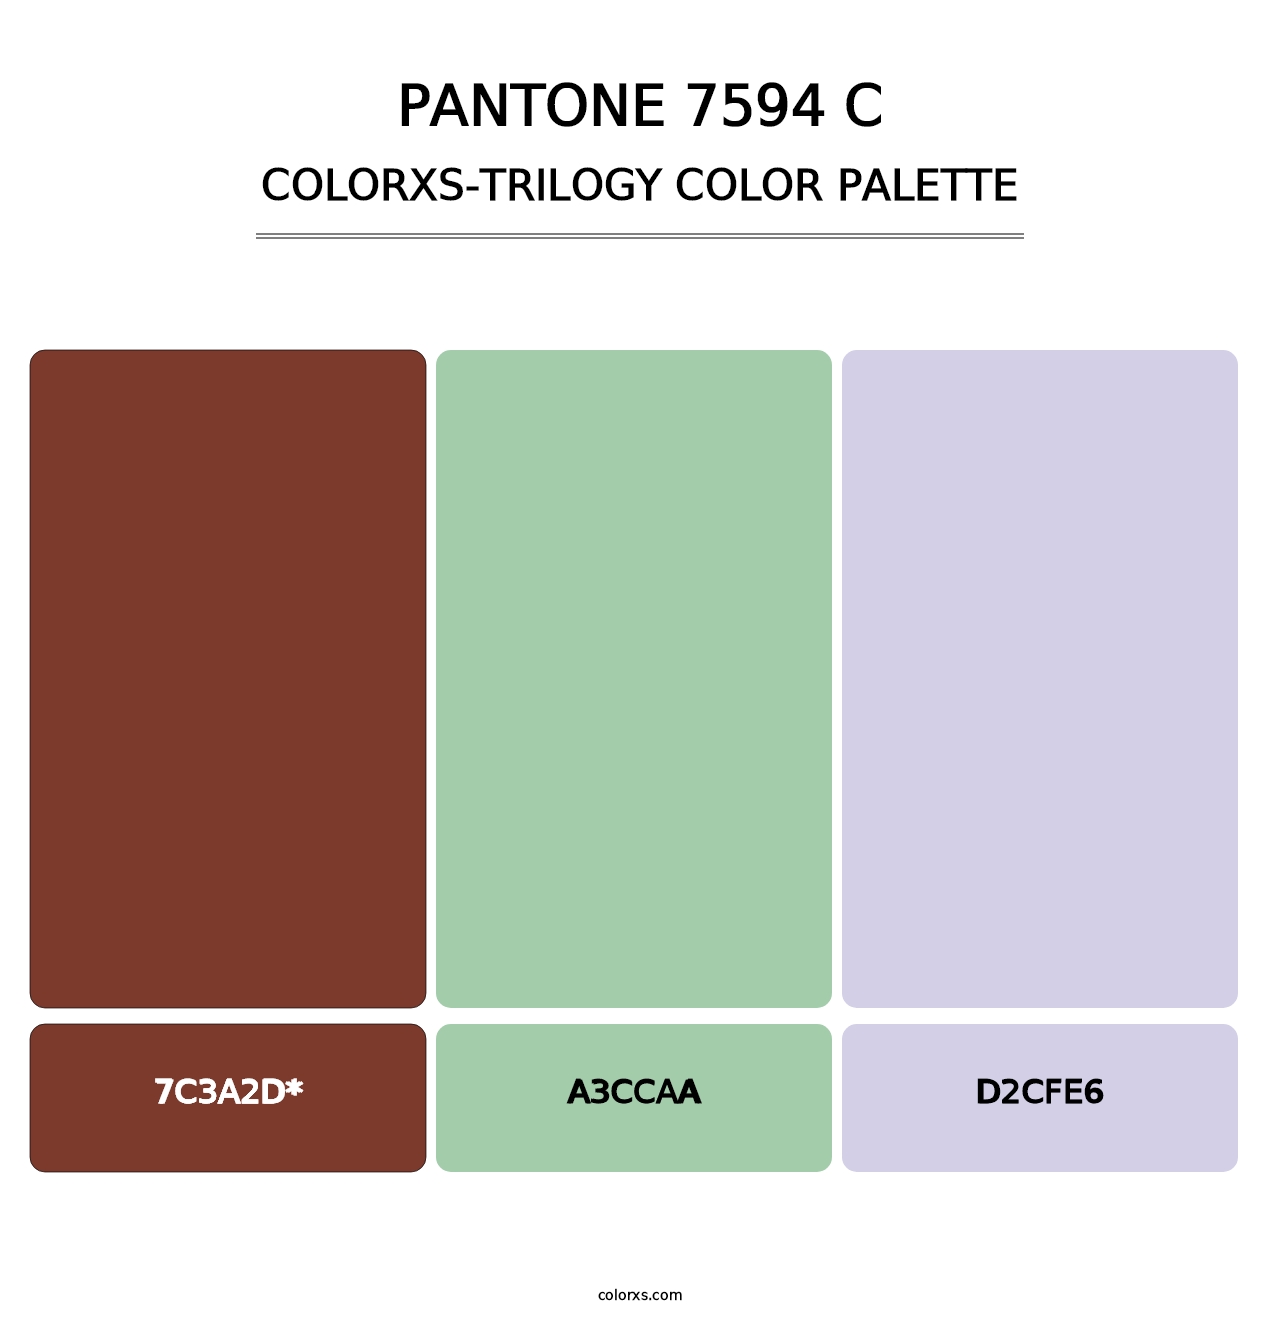 PANTONE 7594 C - Colorxs Trilogy Palette